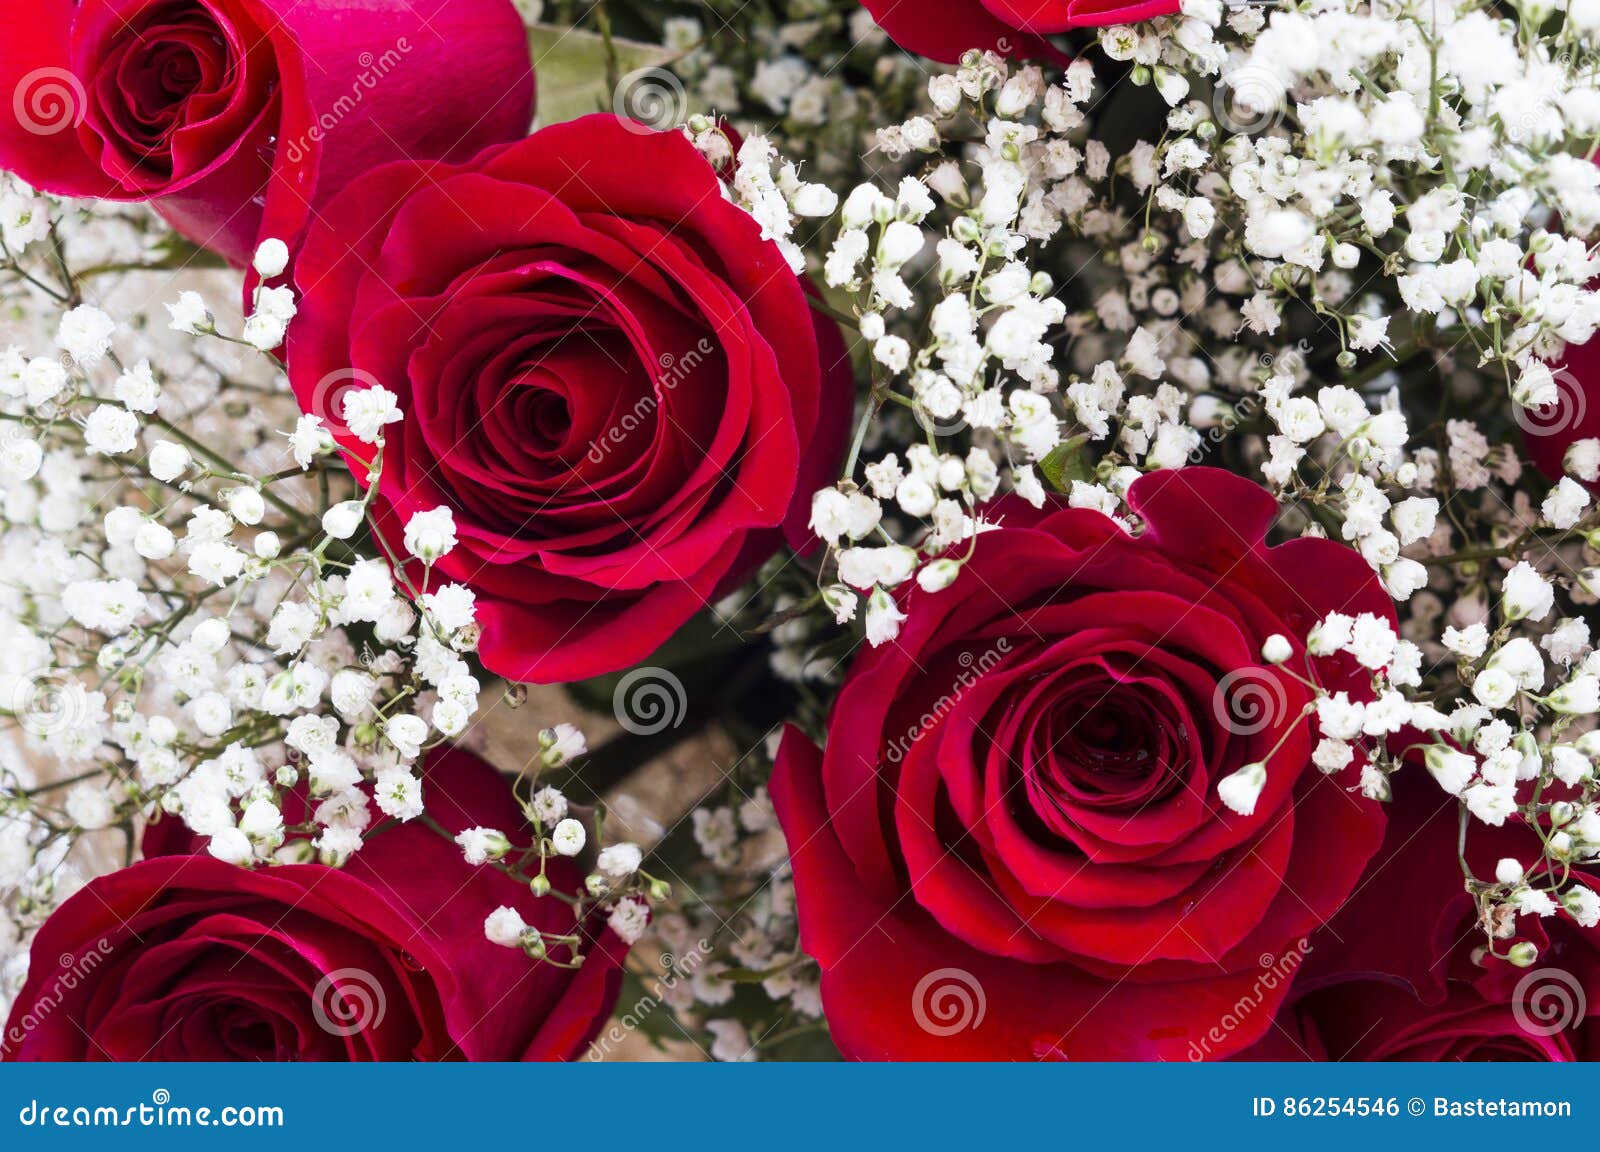 inch een vuurtje stoken In de naam Mooie rode rozen stock foto. Image of adem, groen, textuur - 86254546